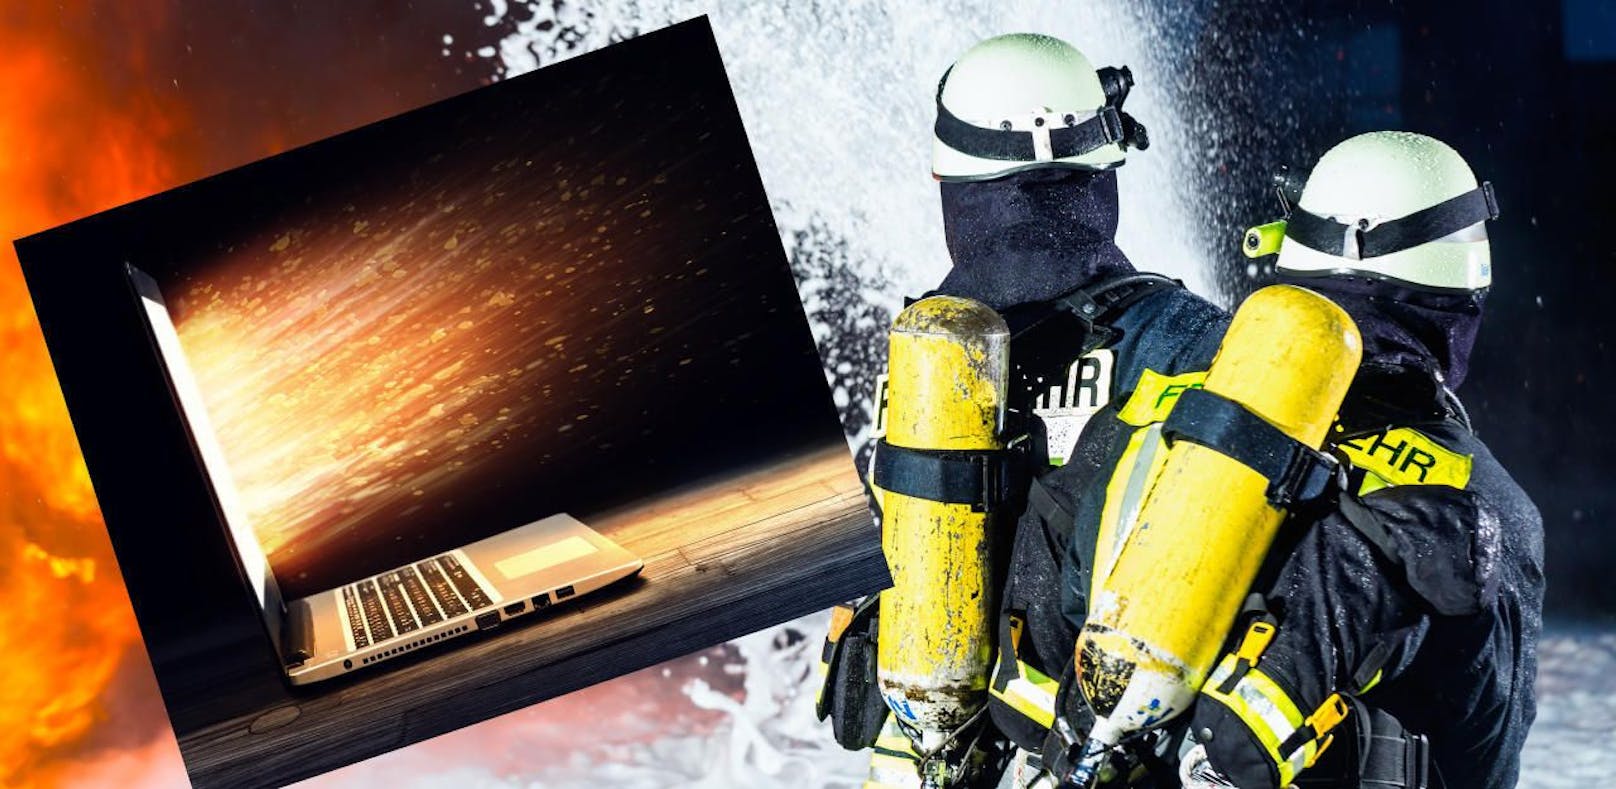 Der Laptop-Akku explodierte und setzte die Matratze in Brand.